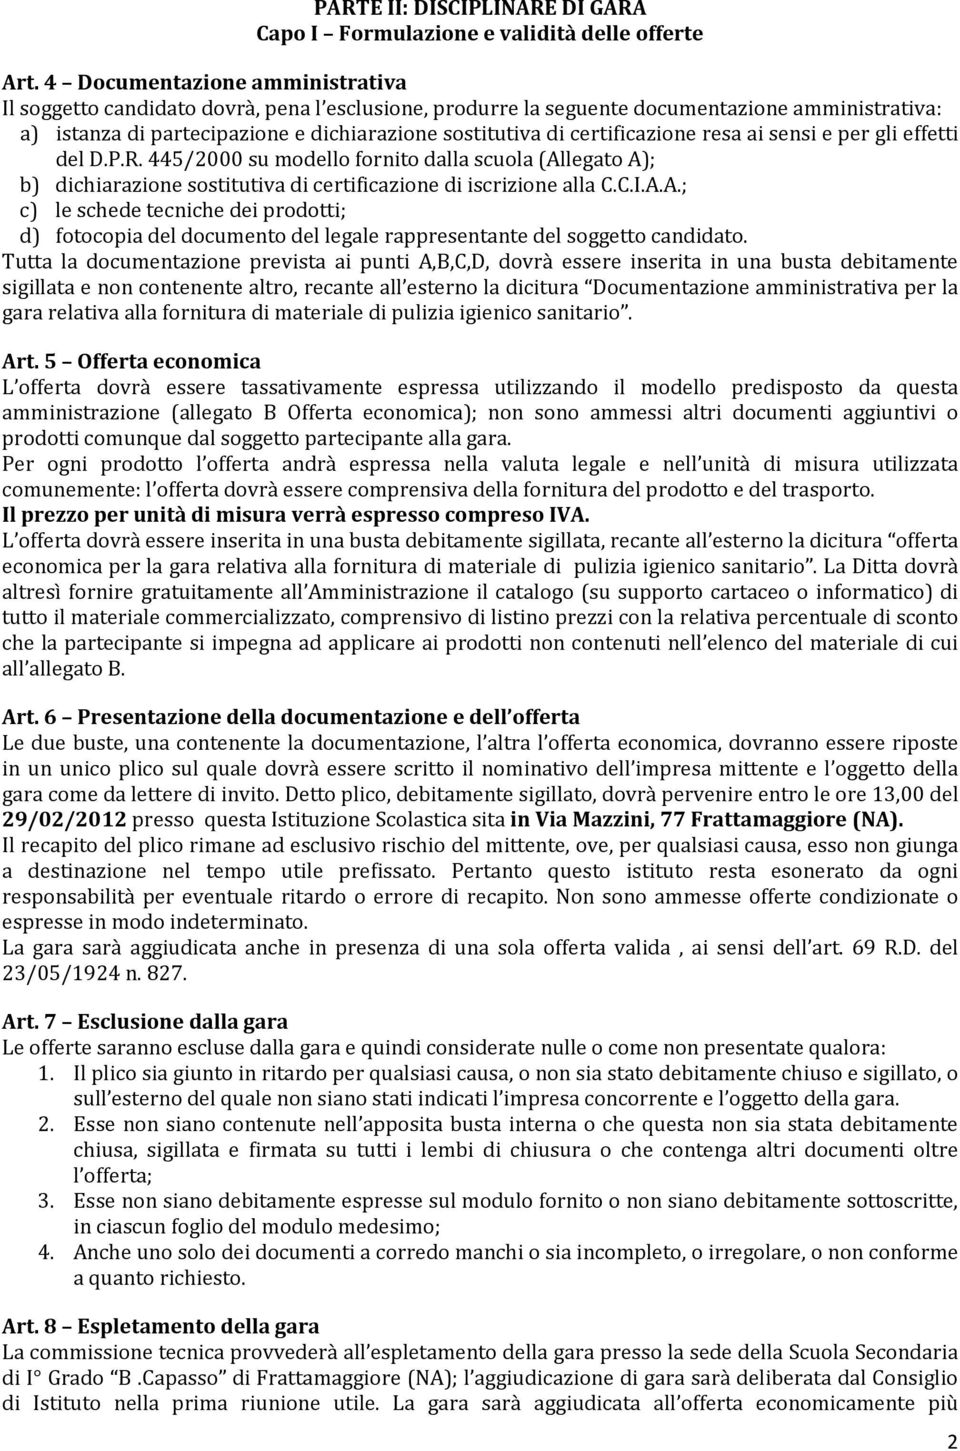 certificazione resa ai sensi e per gli effetti del D.P.R. 445/2000 su modello fornito dalla scuola (Al